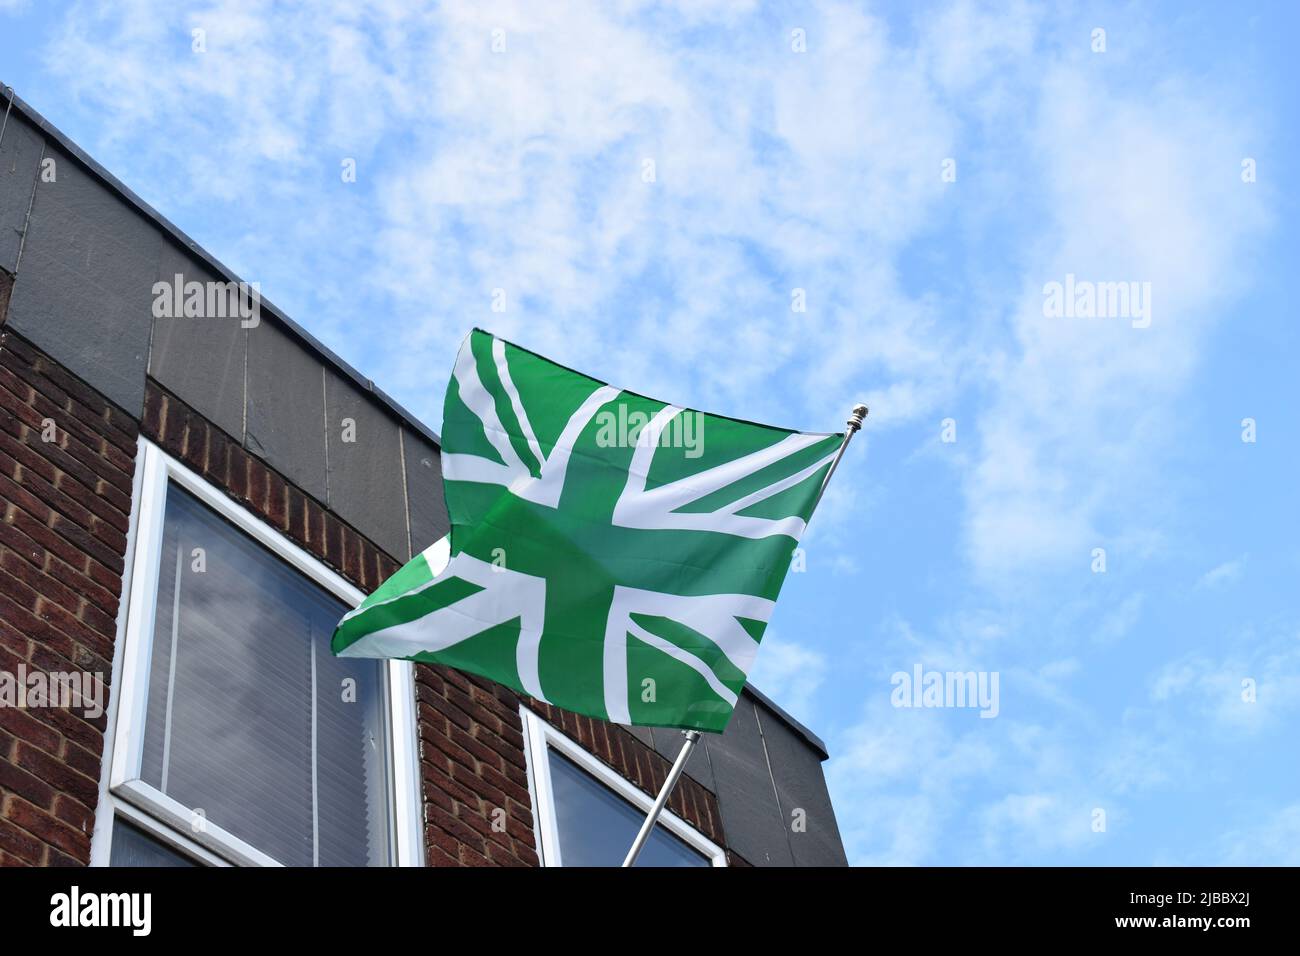 Le drapeau vert a été flotté à Newport Pagnell pour célébrer la victoire du club de football de Newport Pagnell Town. Les couleurs NPTFC sont le vert et le blanc. Banque D'Images